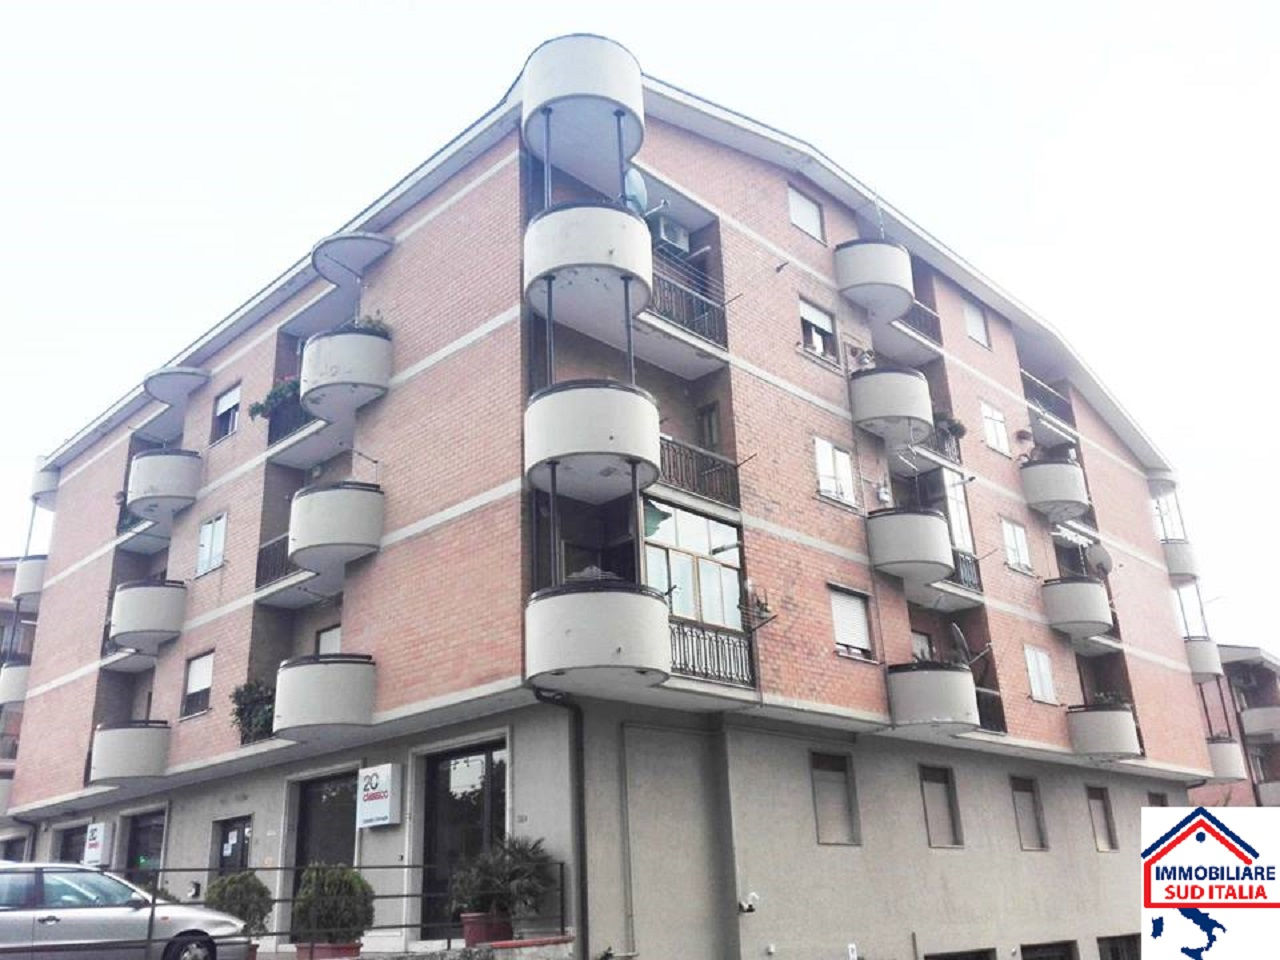 Appartamento in vendita a Mercogliano, 4 locali, prezzo € 165.000 | CambioCasa.it